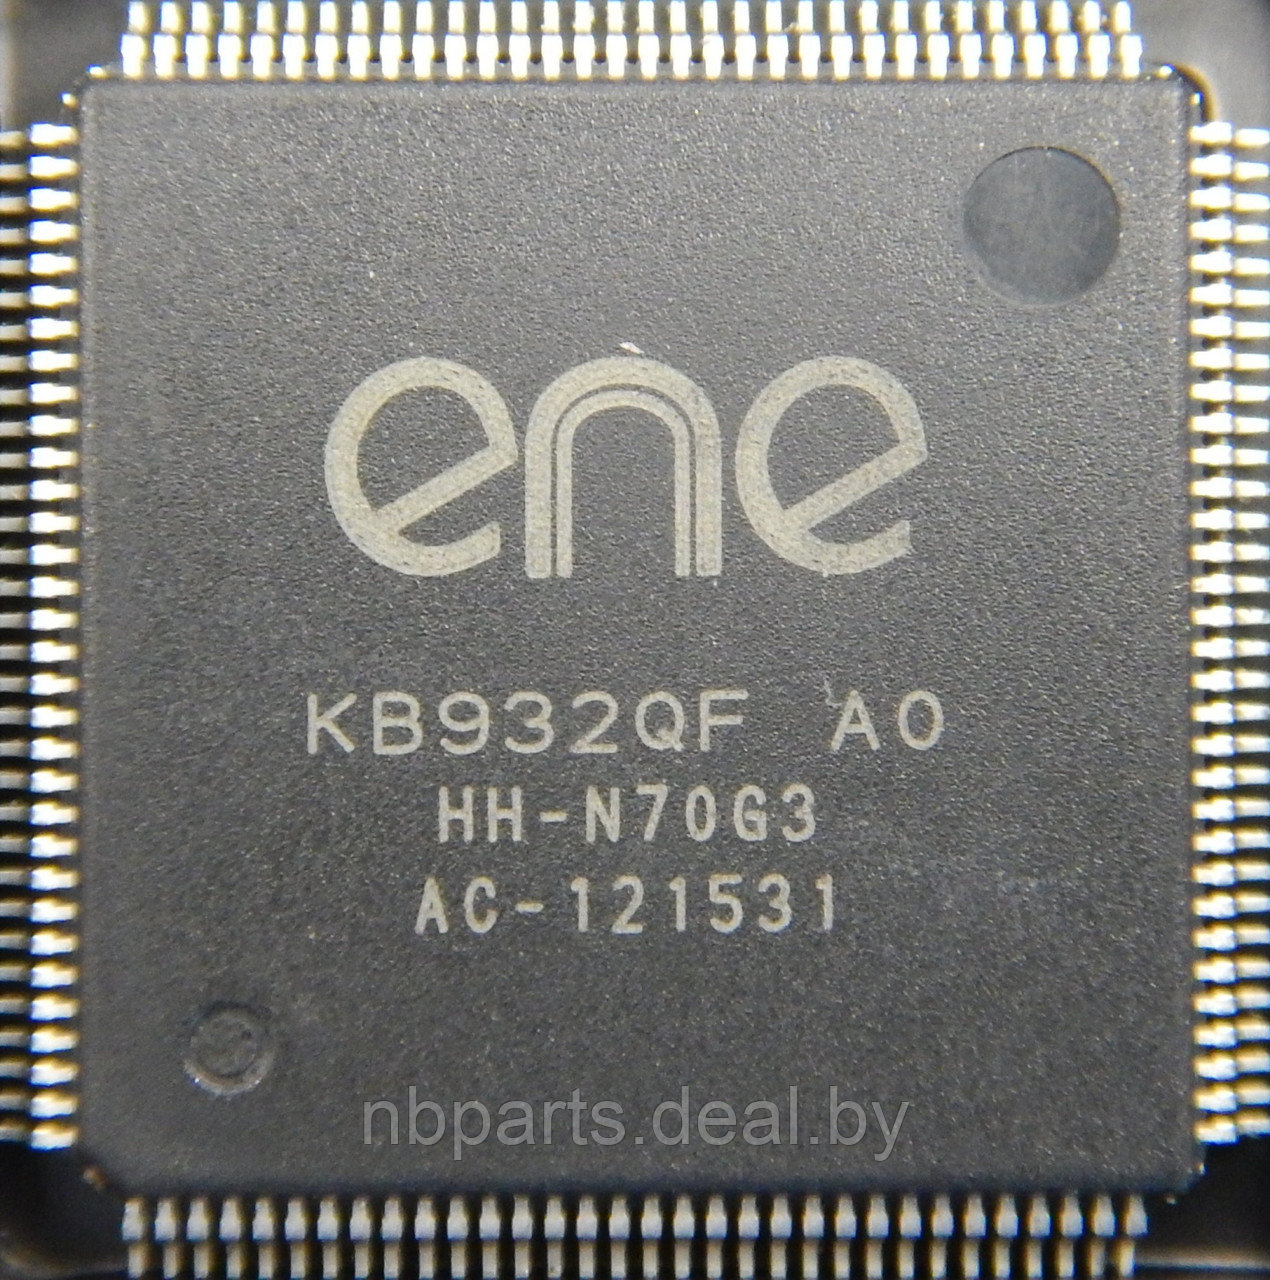 Мультиконтроллер KB932QF A0